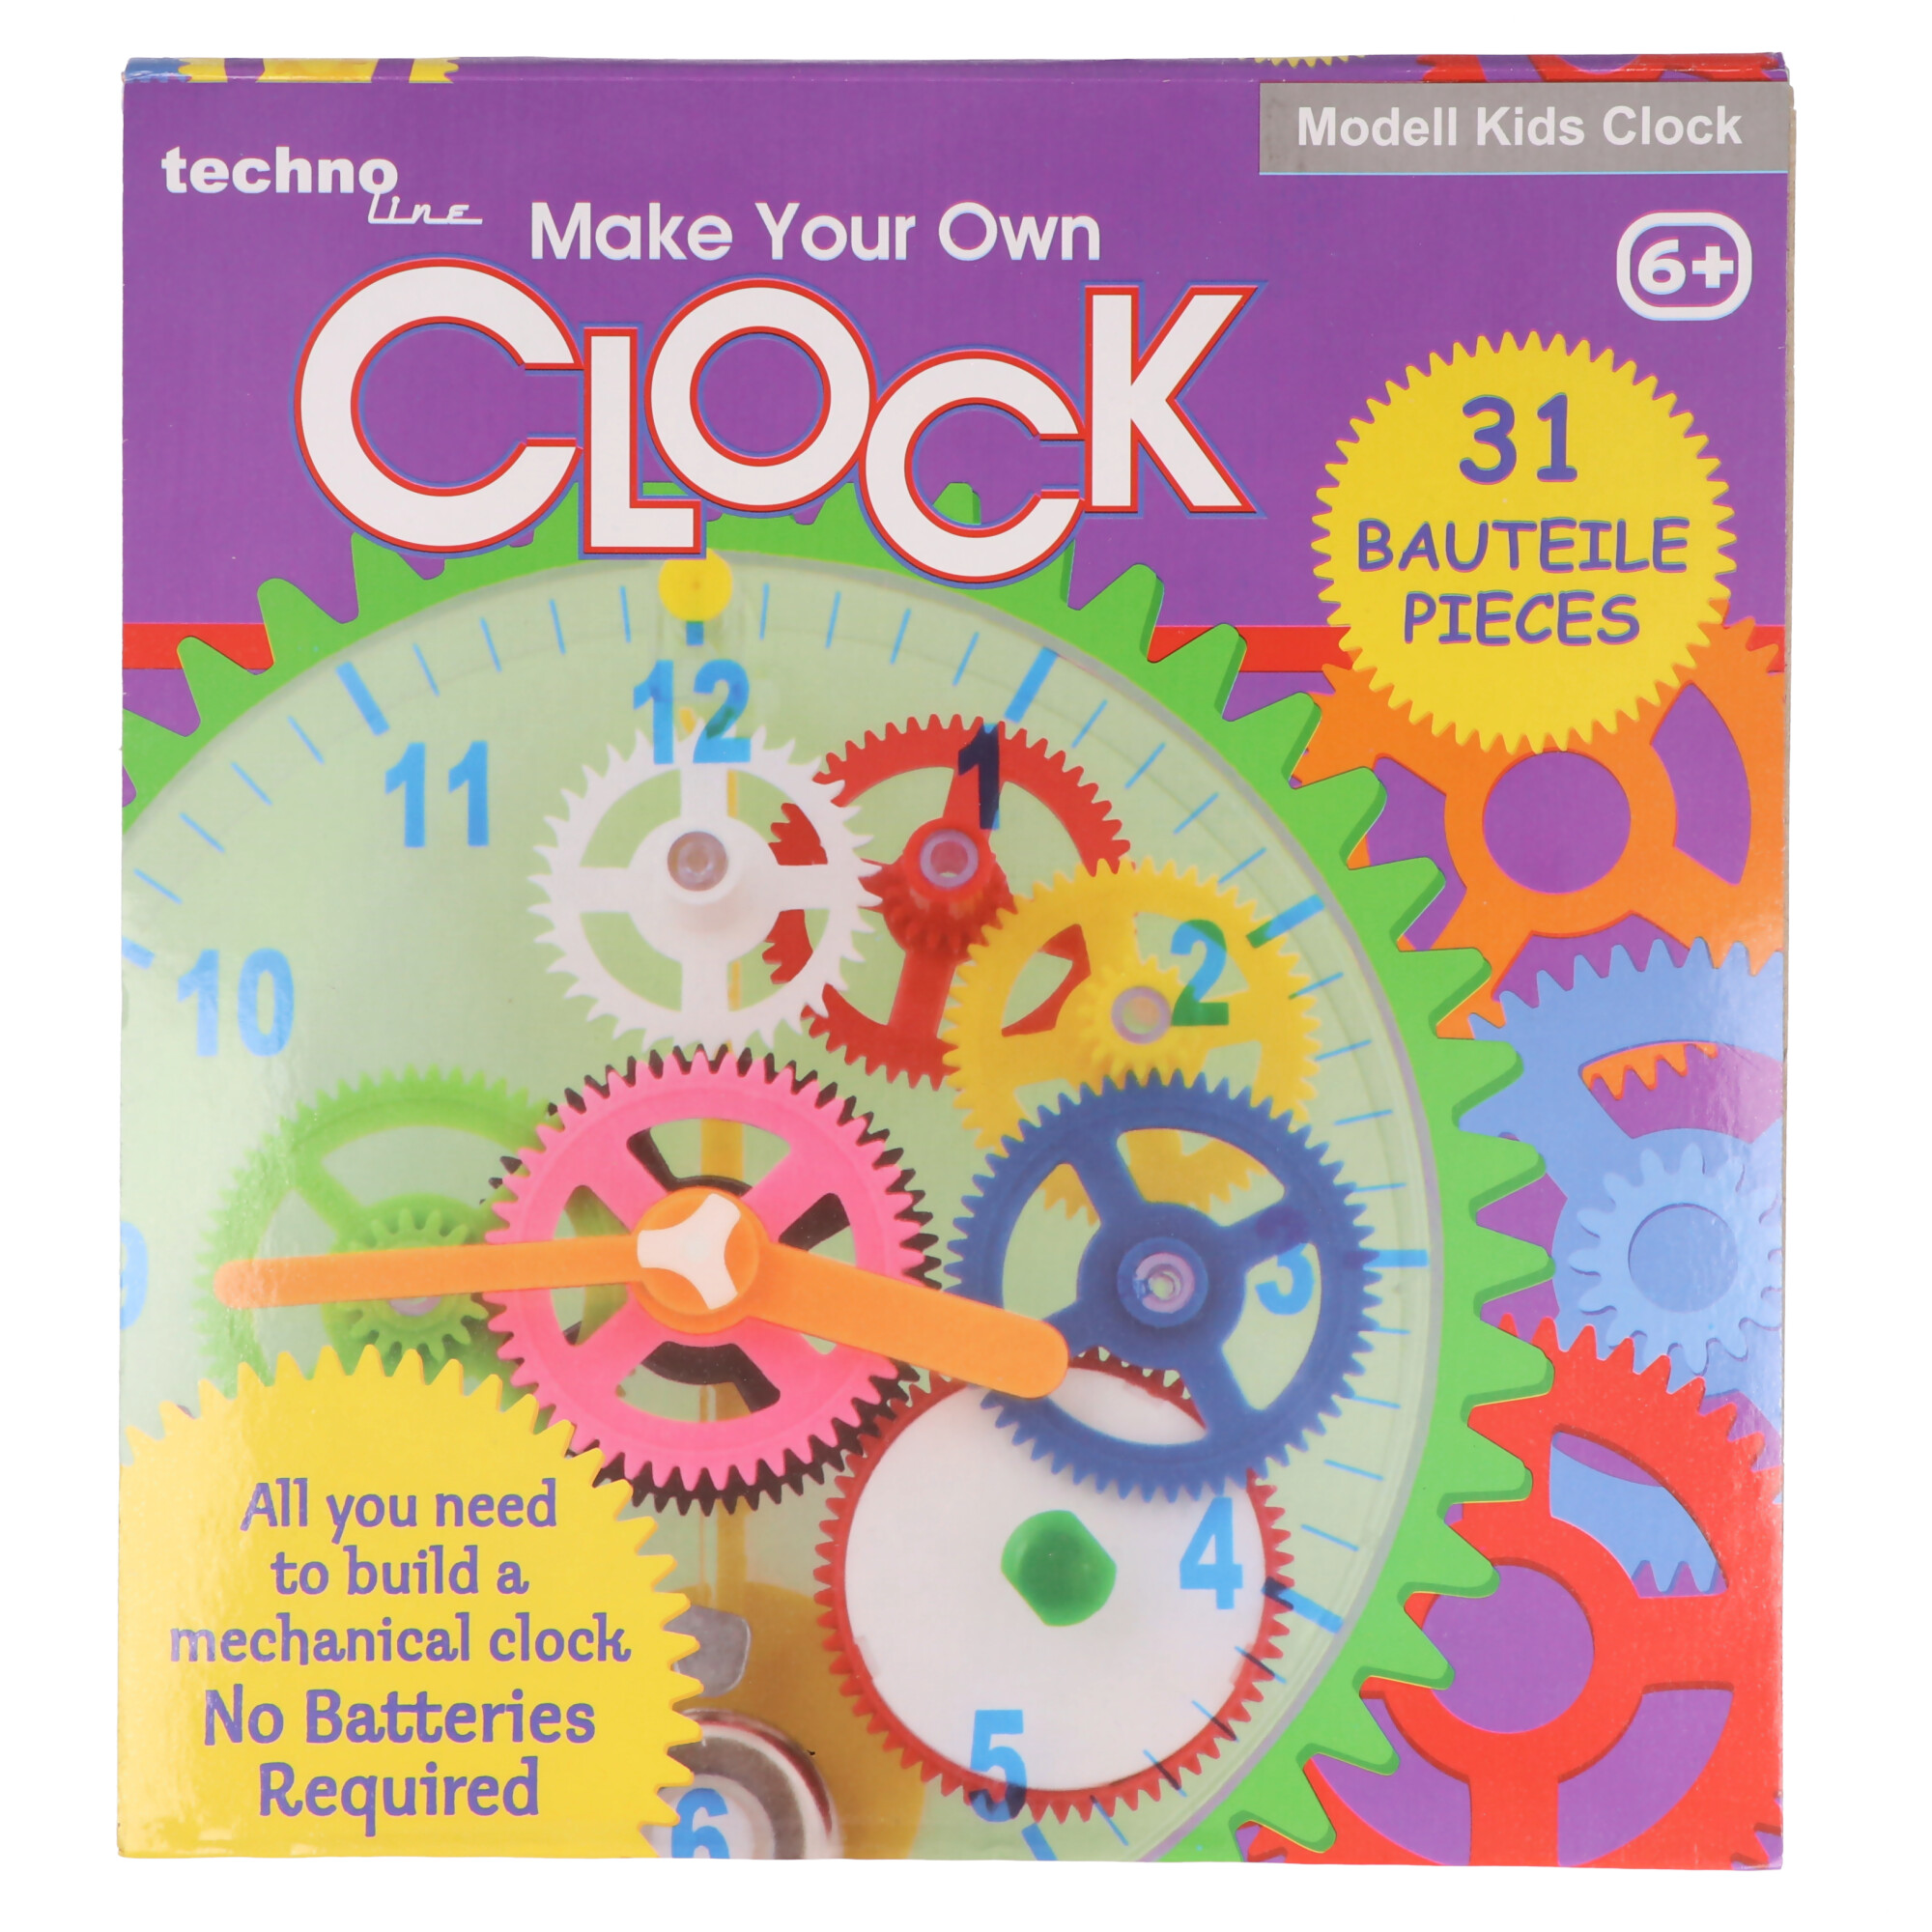 Modell Kids Clock - Bausatz für Kinderuhr mit transparentem Gehäuse, Batteriefrei